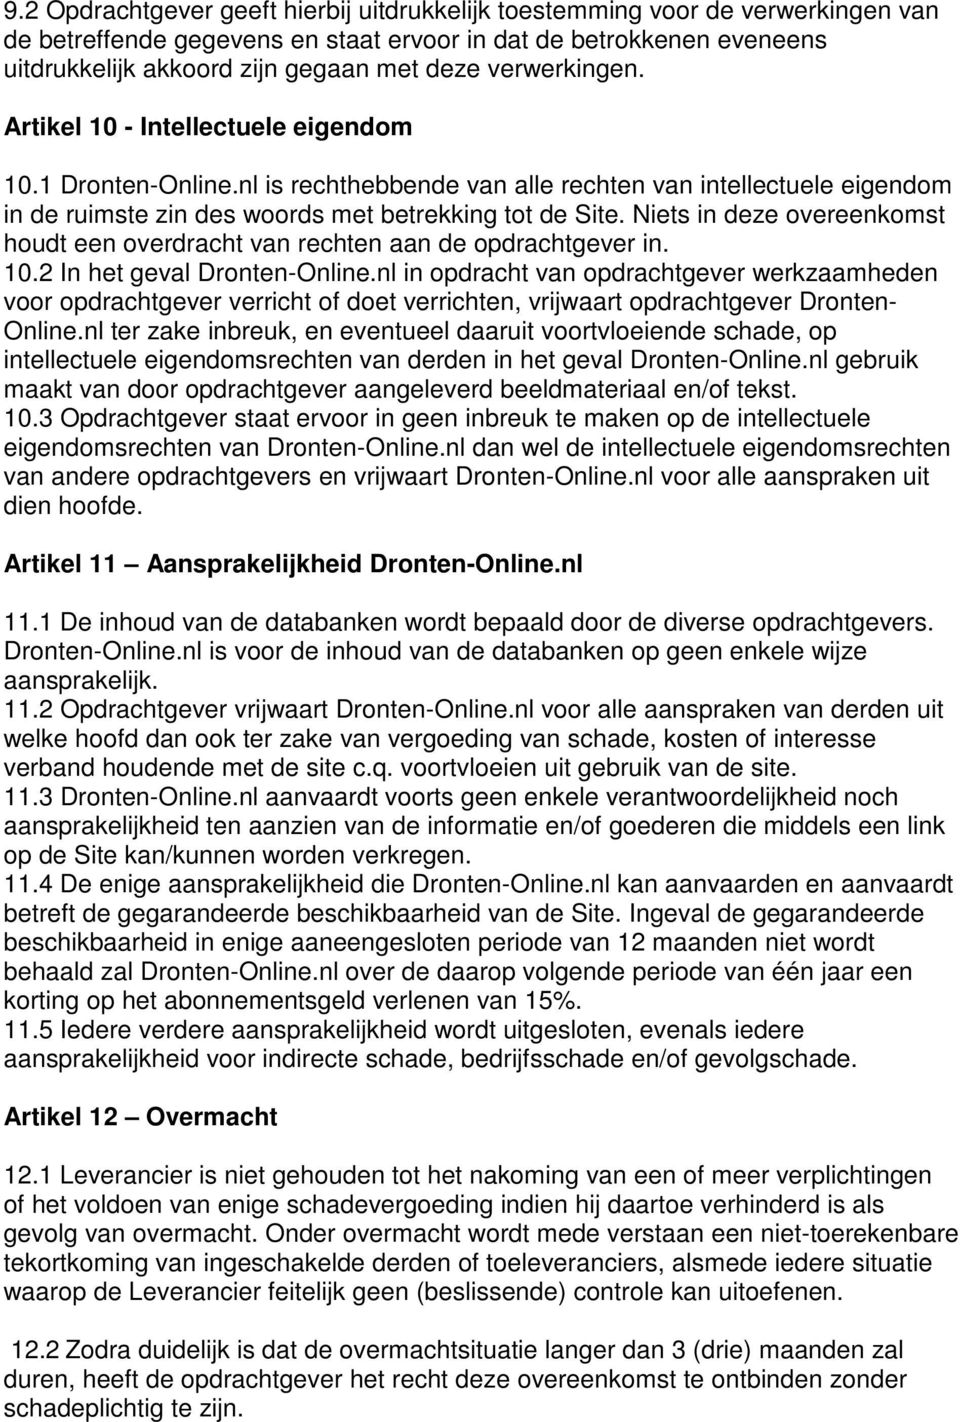 Niets in deze overeenkomst houdt een overdracht van rechten aan de opdrachtgever in. 10.2 In het geval Dronten-Online.